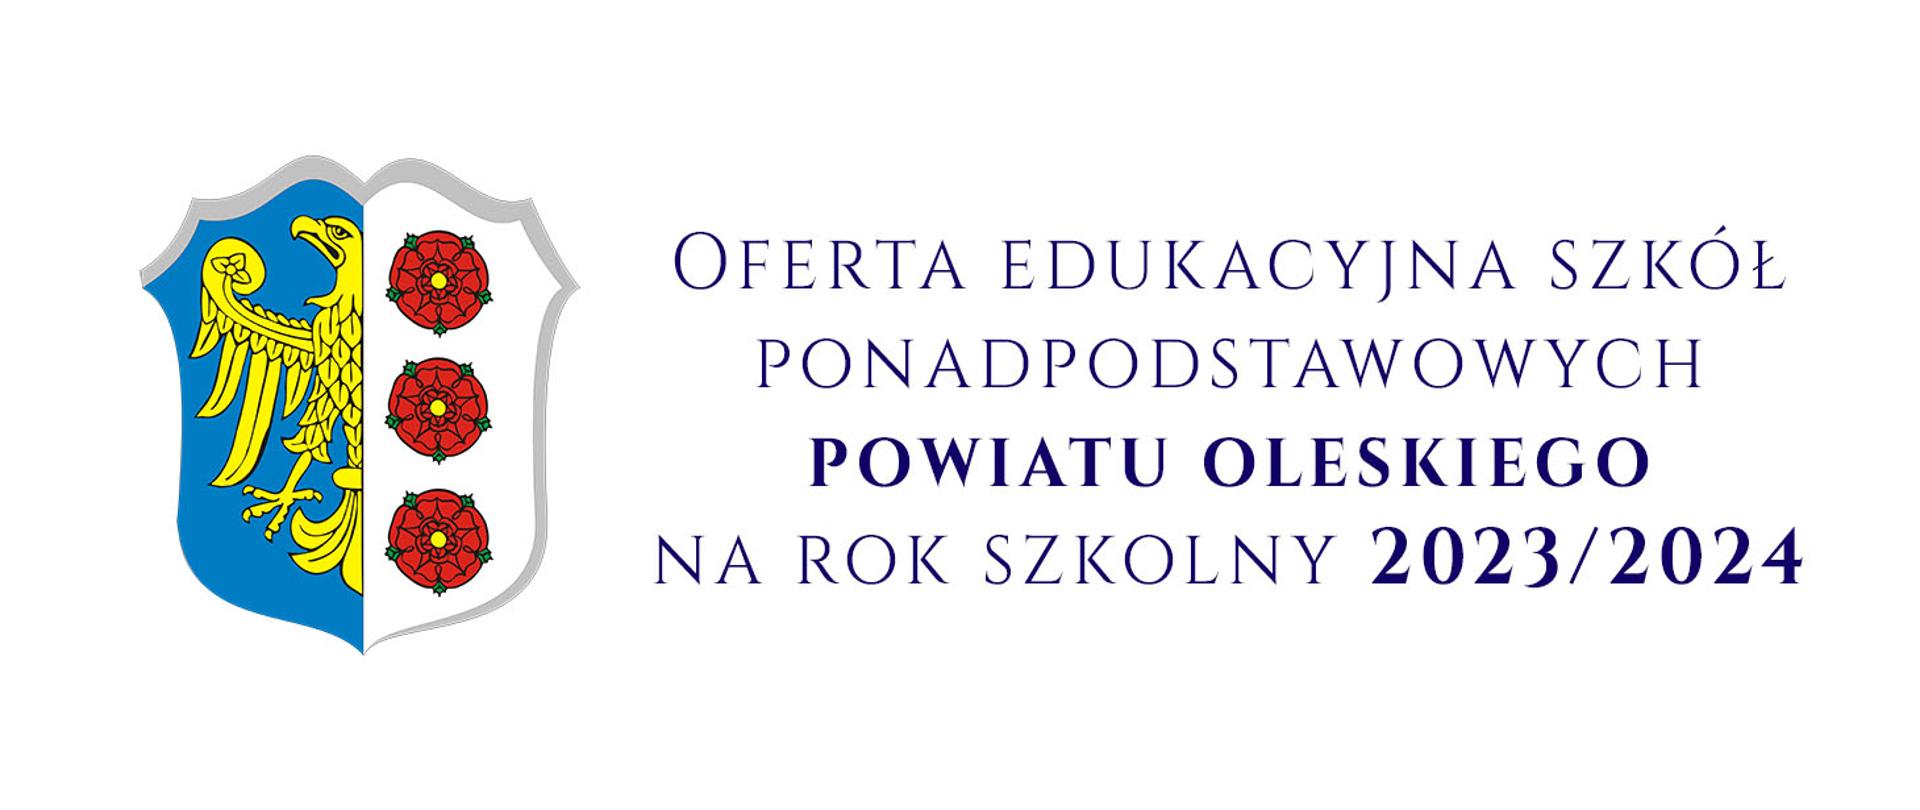 Oferta edukacyjna szkół ponadpodstawowych powiatu oleskiego na rok szkolny 2023/2024